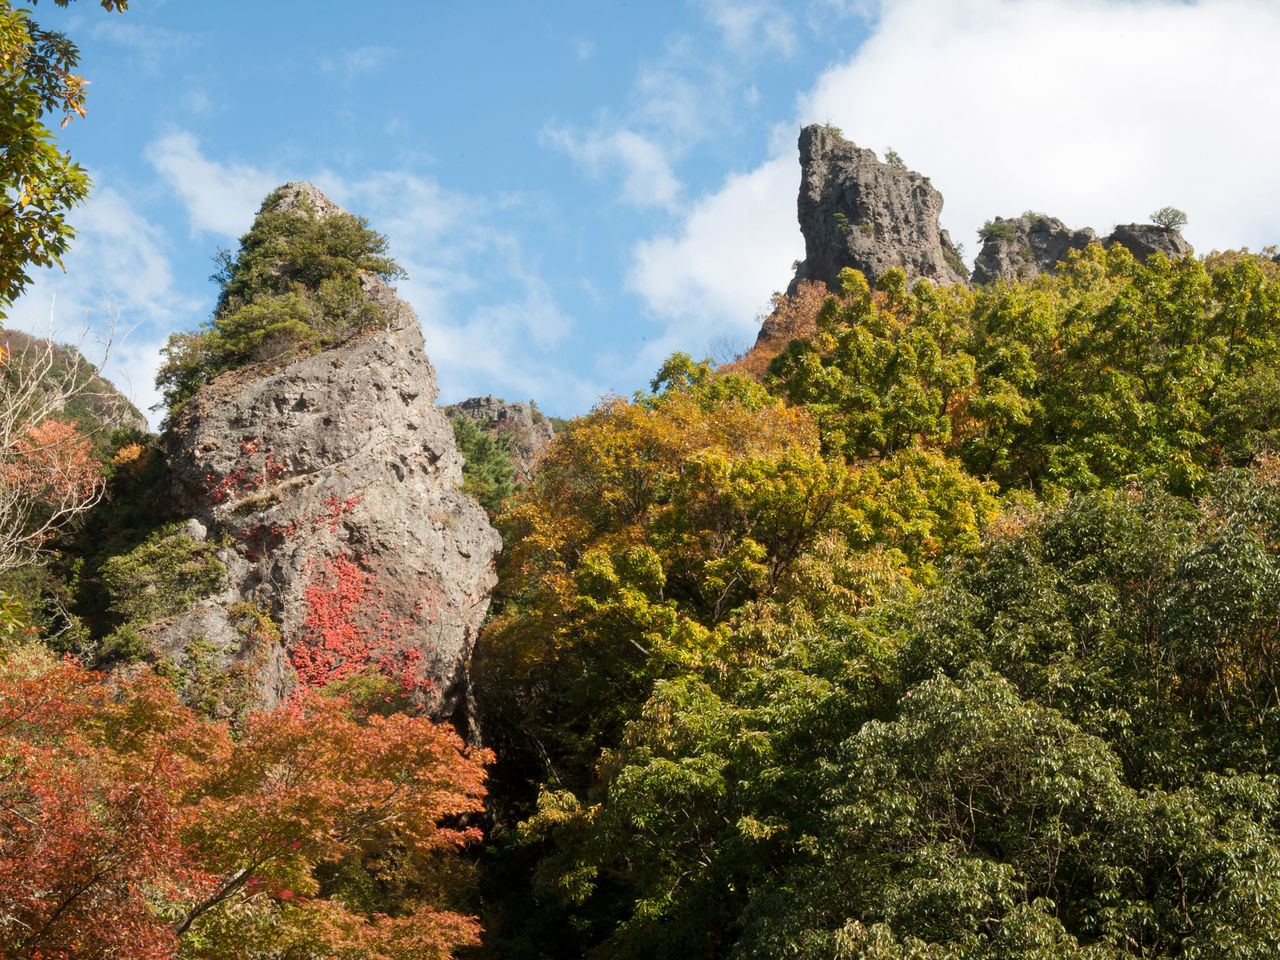 法螺贝岩，“里八景”之一。表里登山道途径蟾蜍岩、鹿岩、松茸岩等多处奇岩怪石